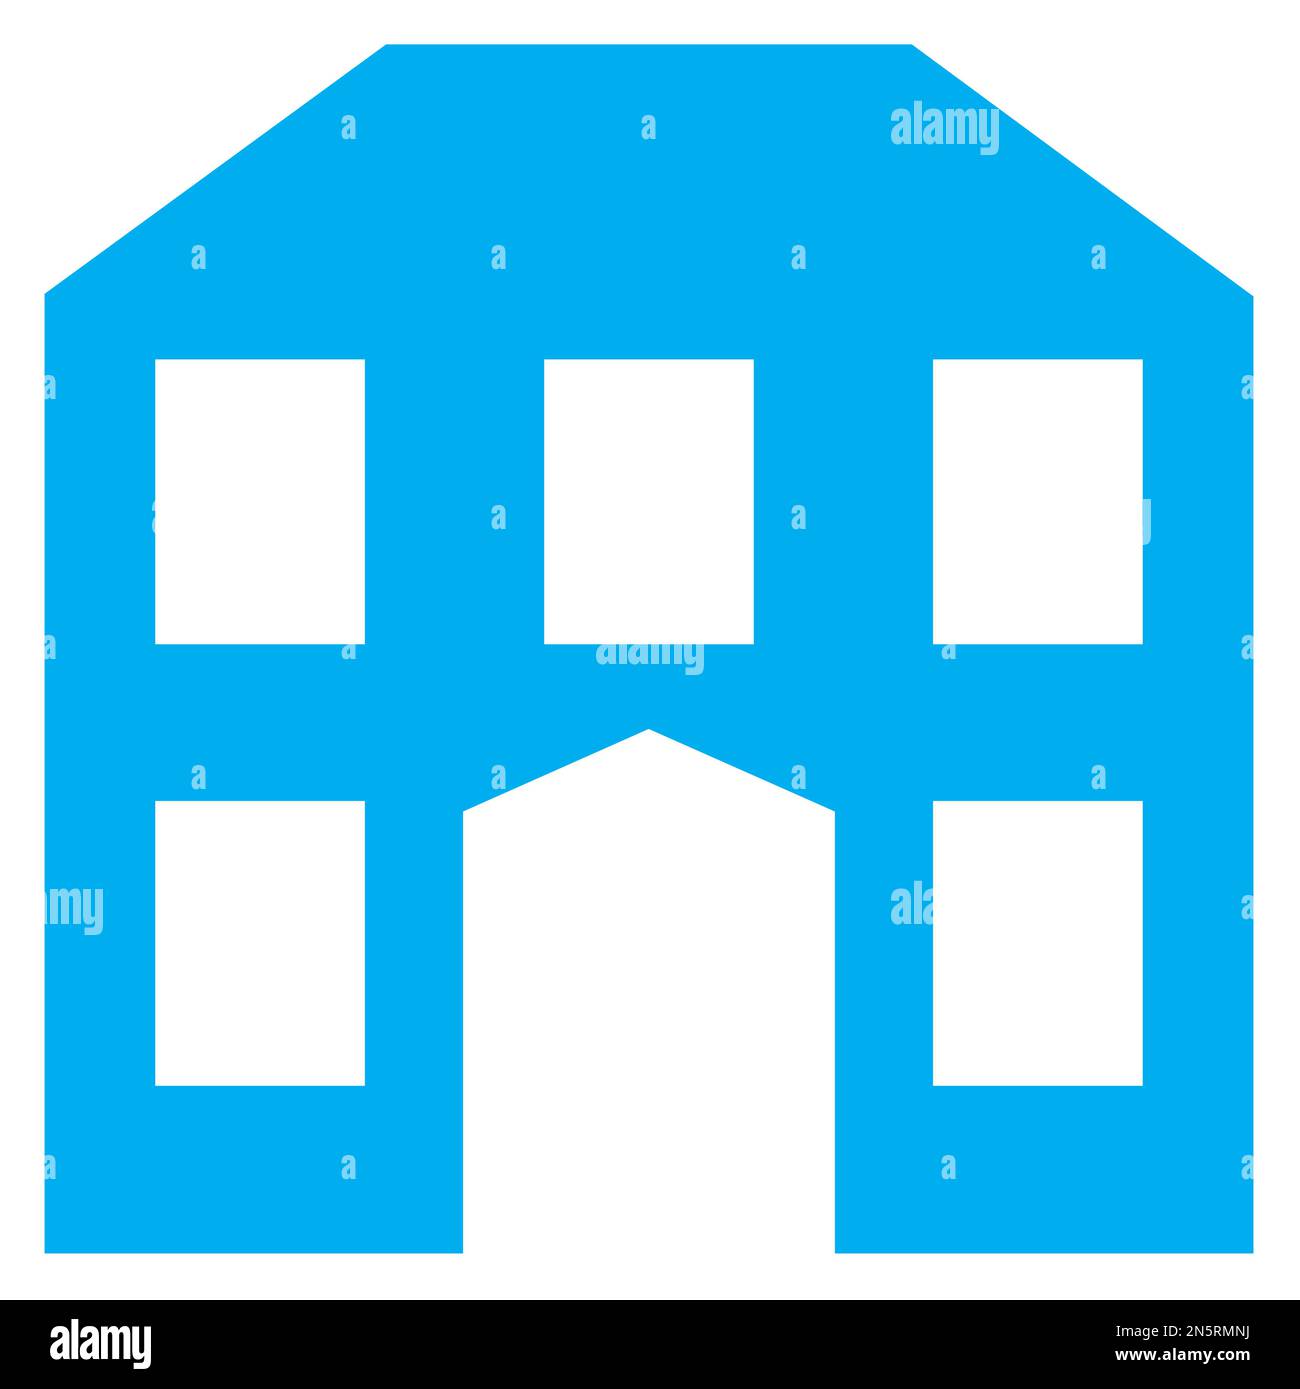 Blau-weiße Vektorgrafik eines Kartensymbols für ein historisches Haus. Es besteht aus einer blauen Silhouette eines stilvollen alten Gebäudes auf weißem Hintergrund Stock Vektor